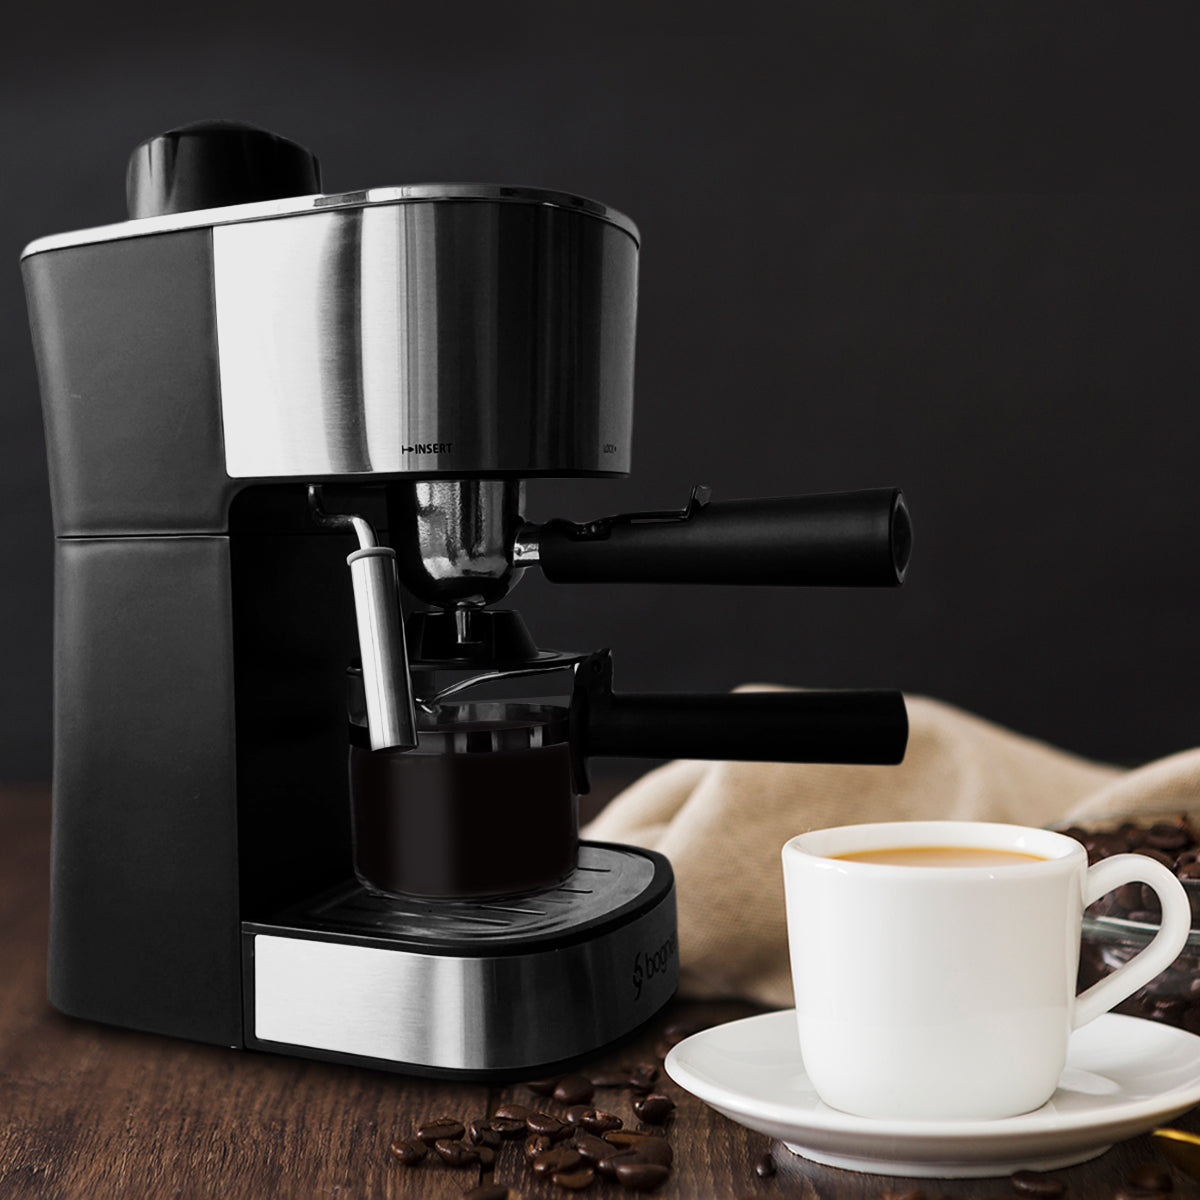 Cafetera espresso 4 tazas con recubrimiento de acero inoxidable para preparar café espresso cappuccino latte